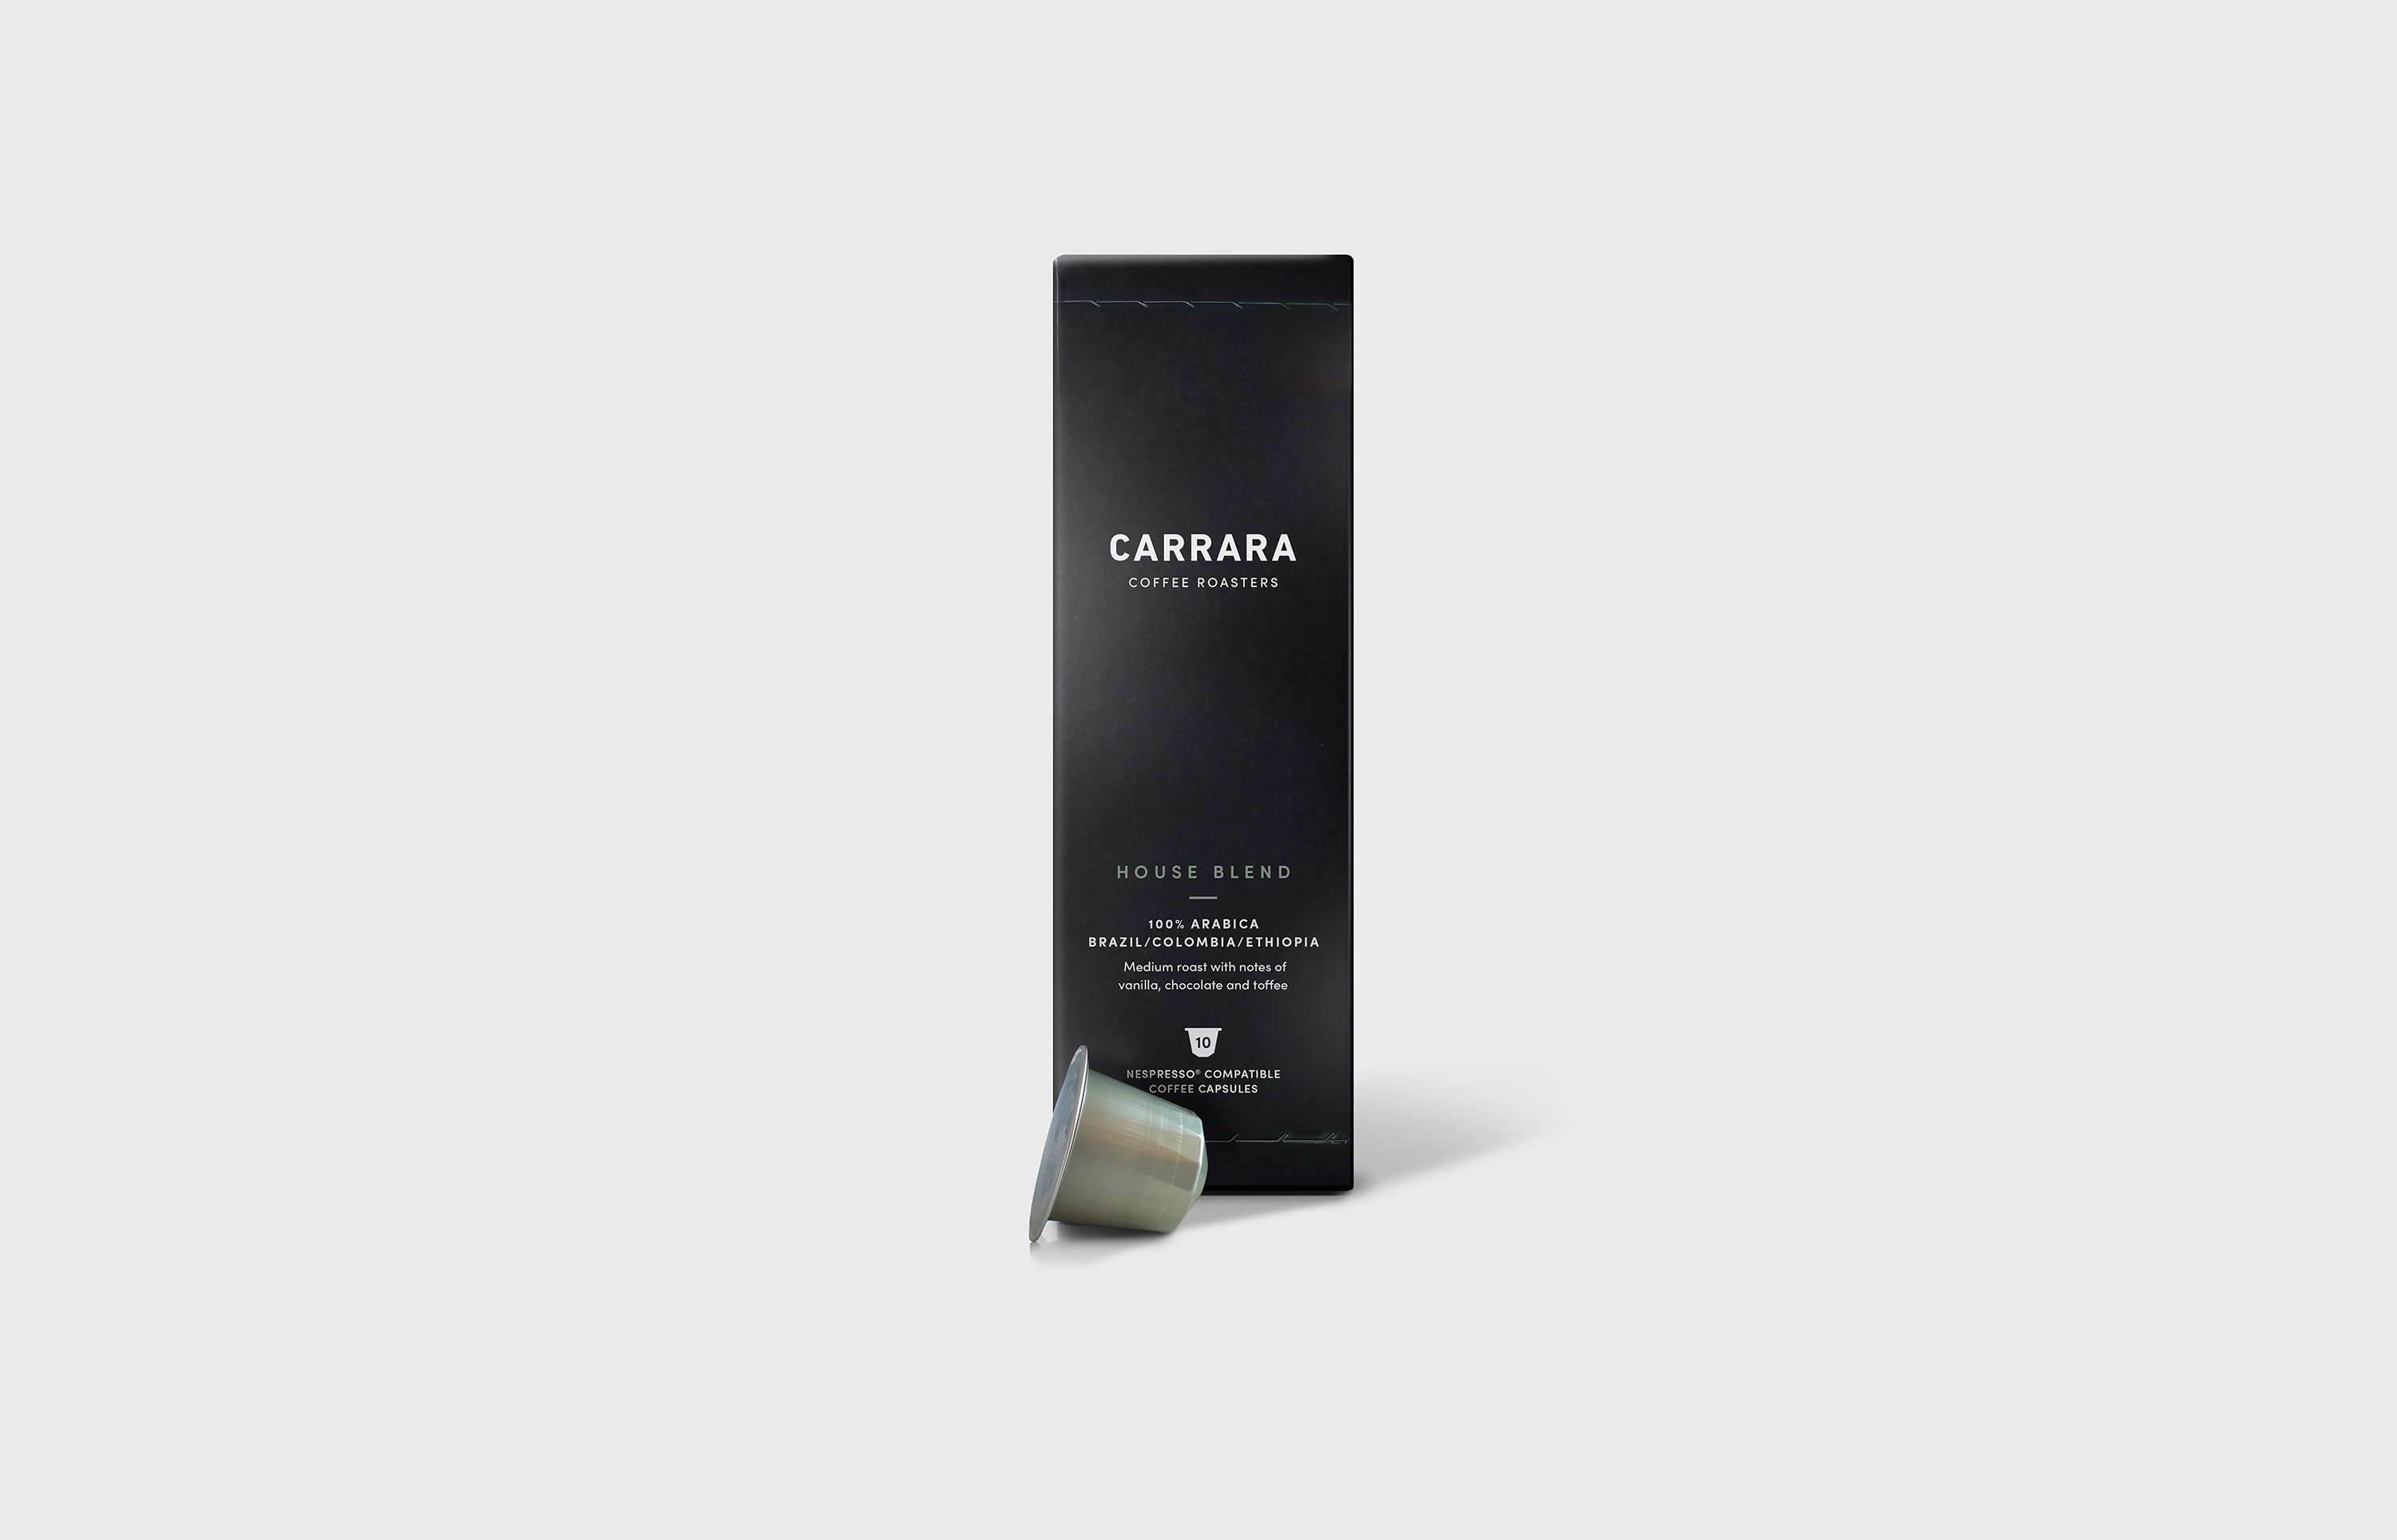 Carrara Coffee Roasters packaging design